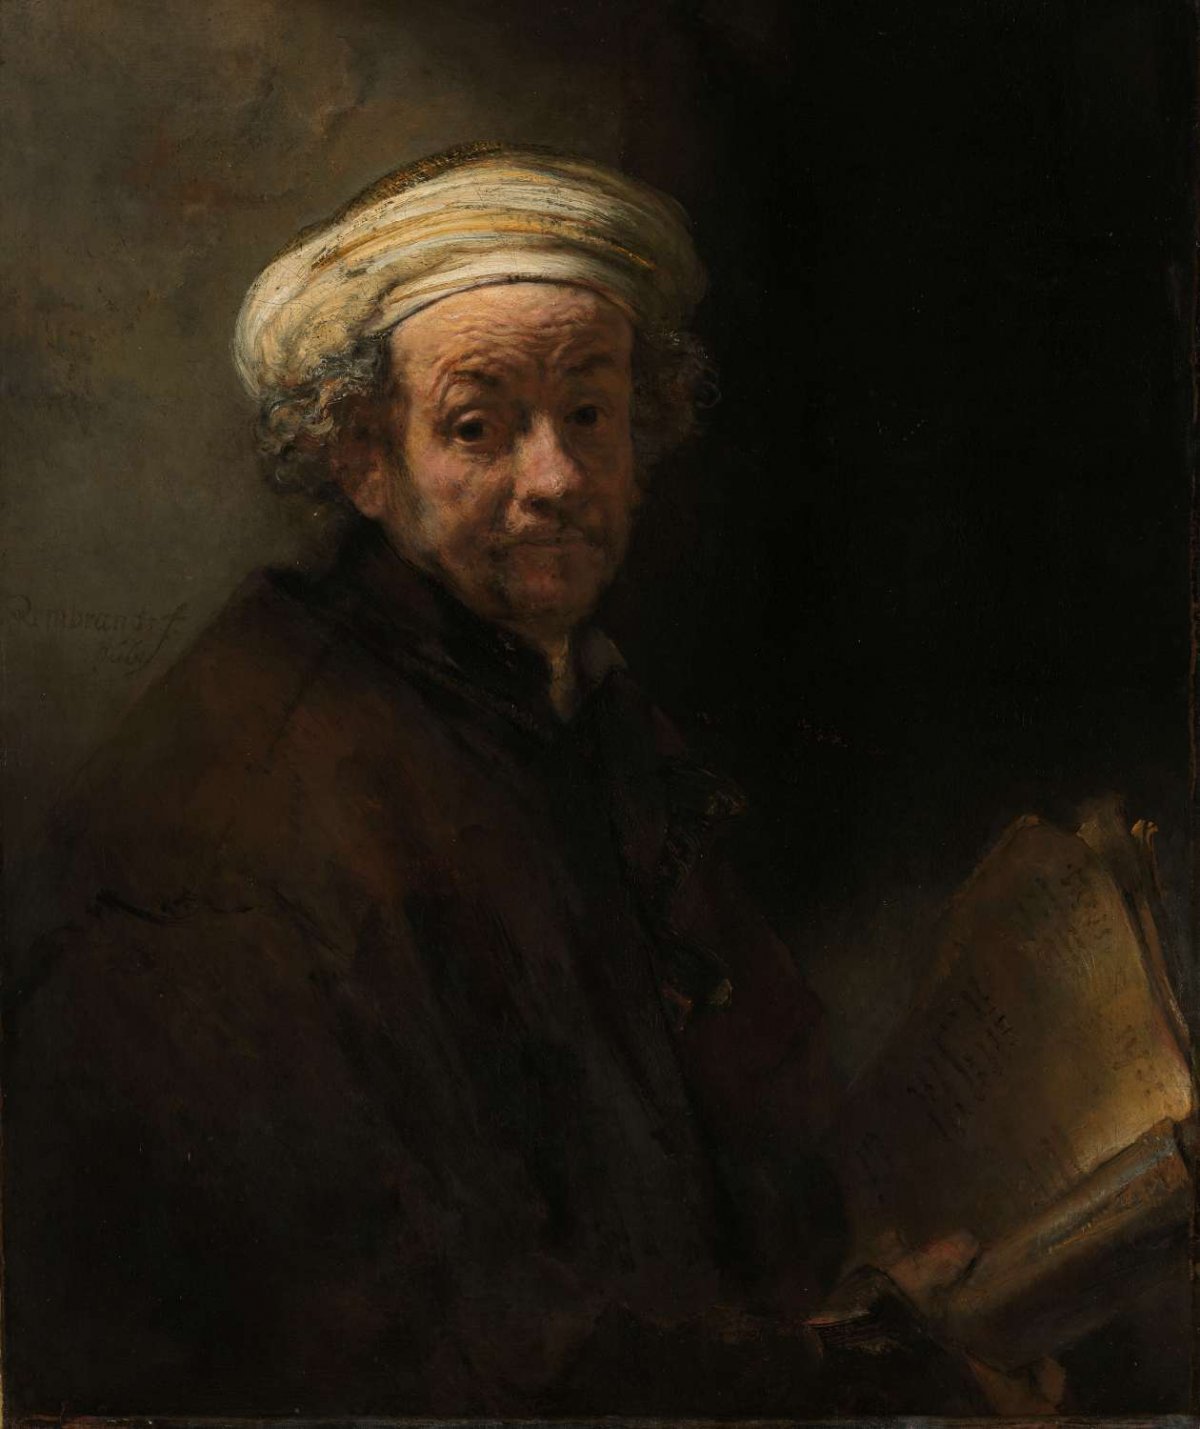 Self-portrait as the Apostle Paul, Rembrandt van Rijn, 1661